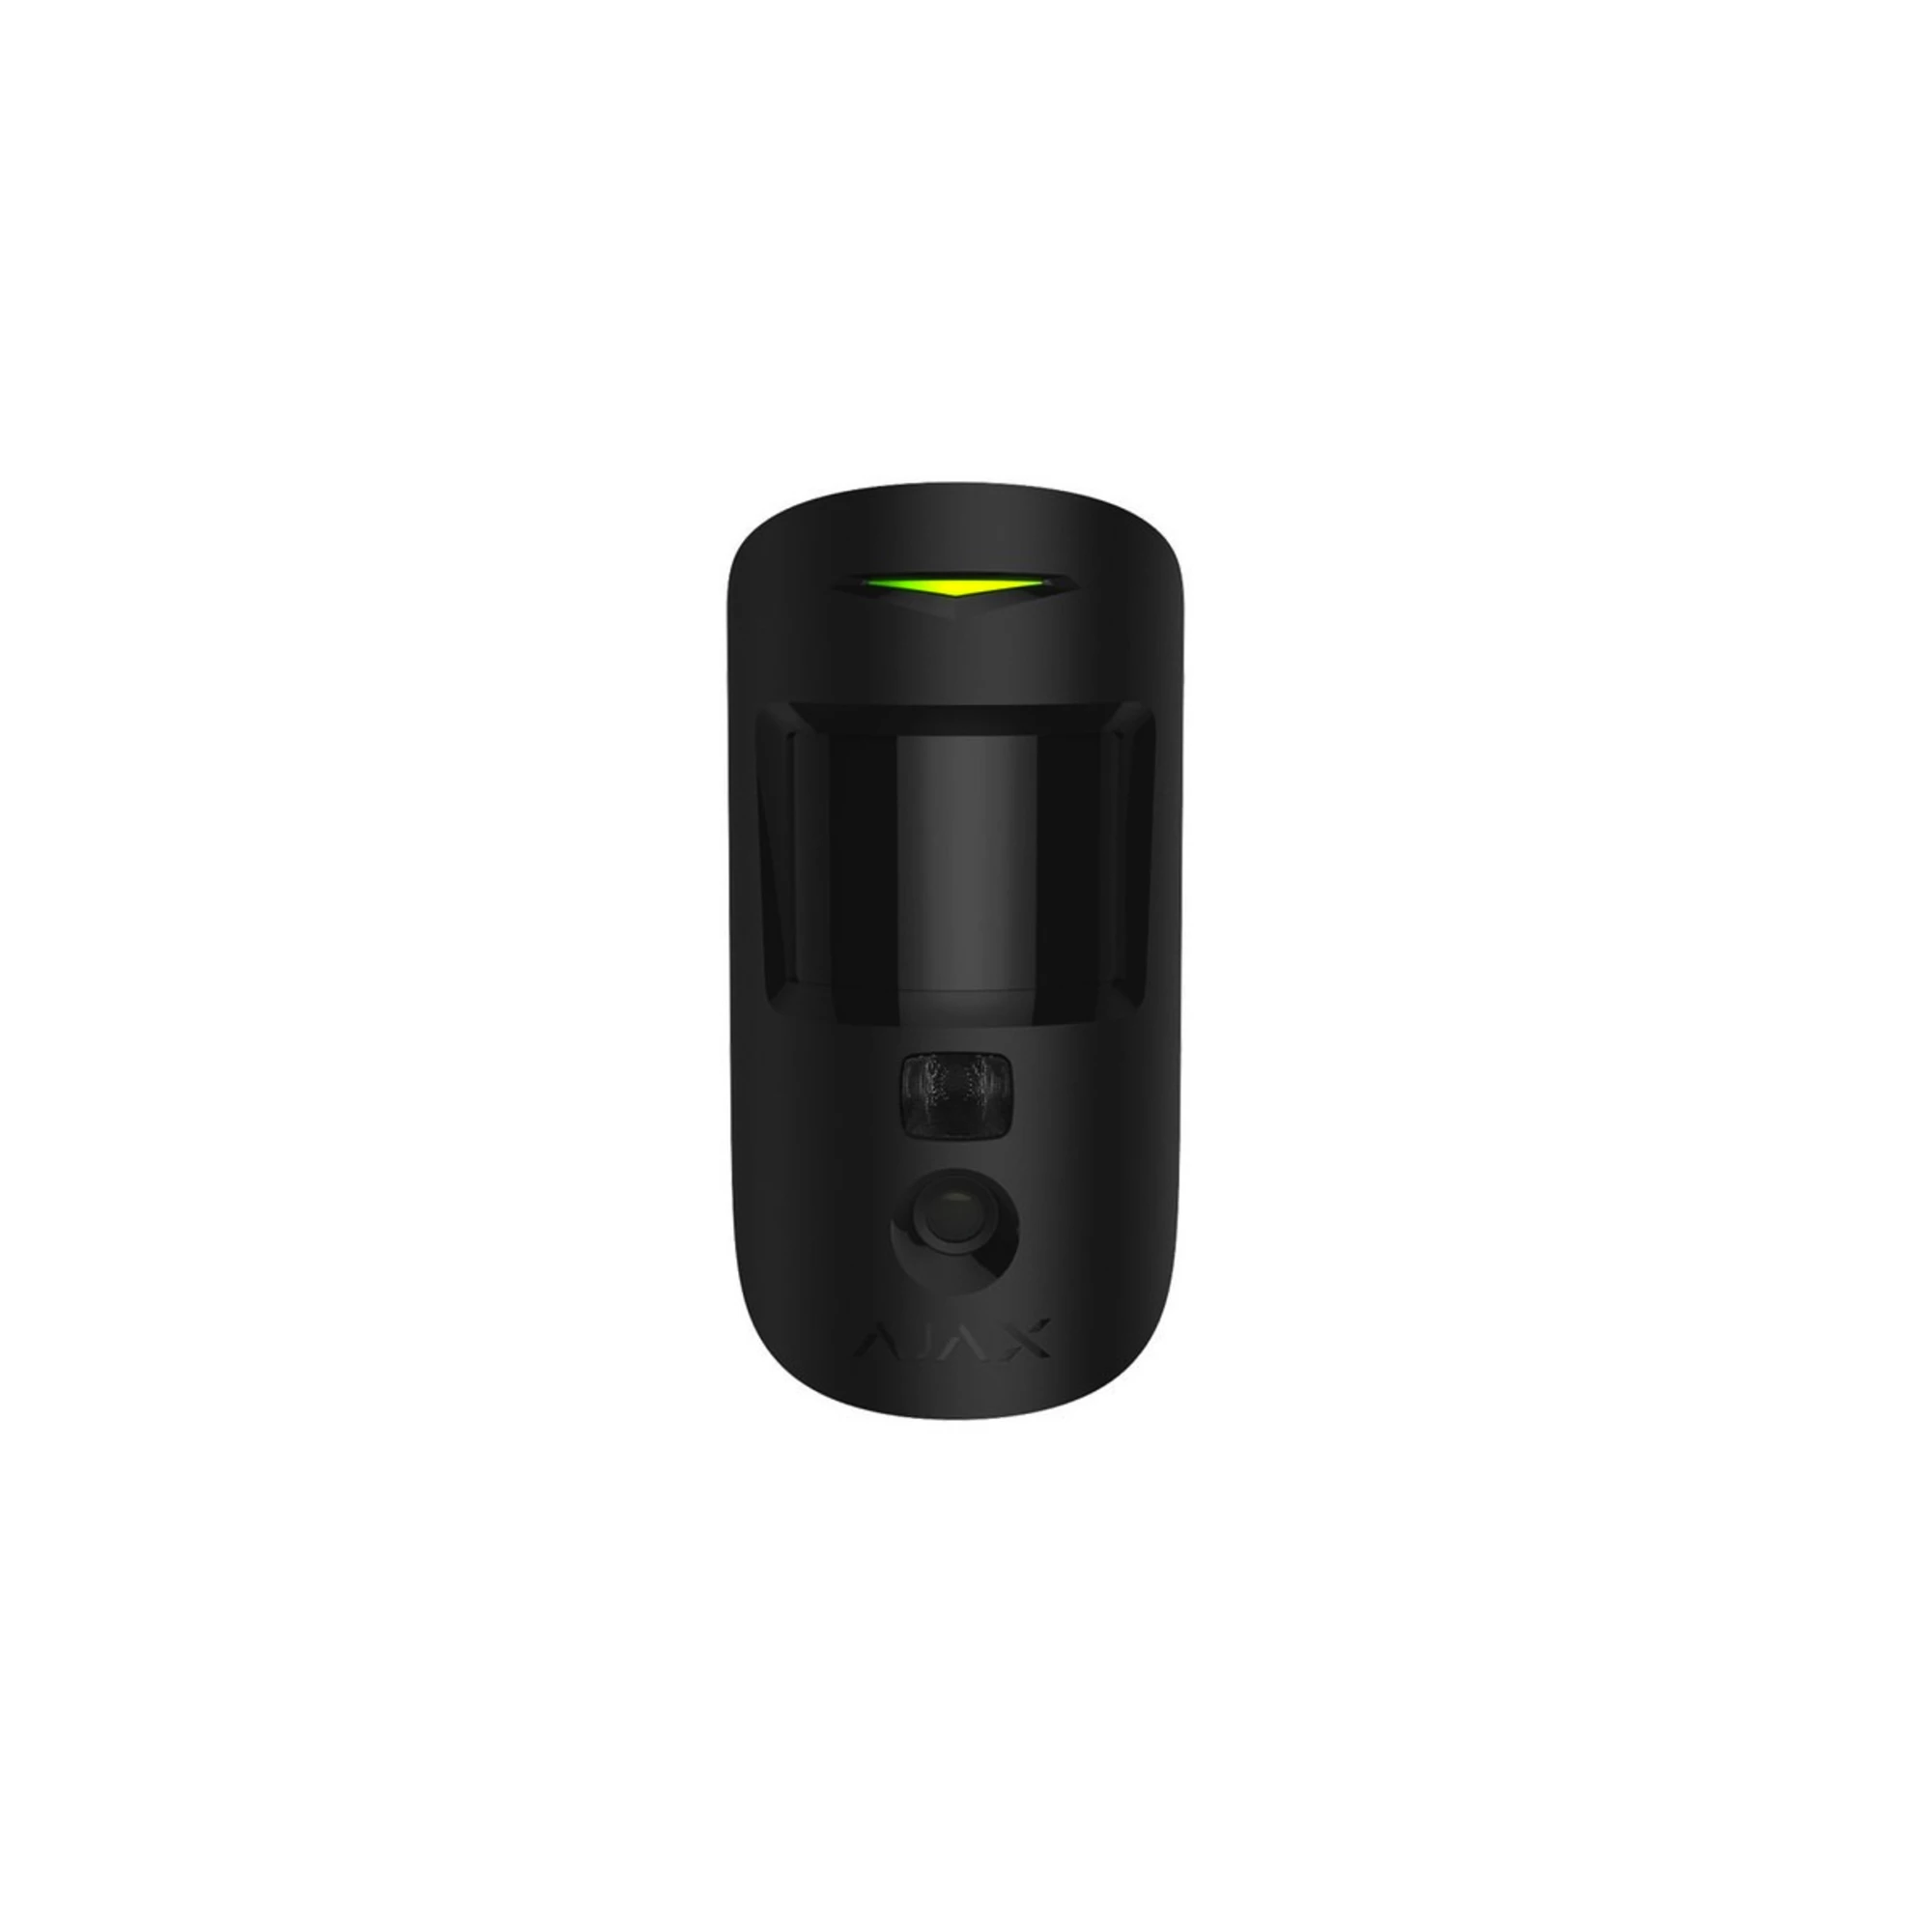 Ajax MotionCam Black - беспроводной датчик движения с фотокамерой для верификации тревог